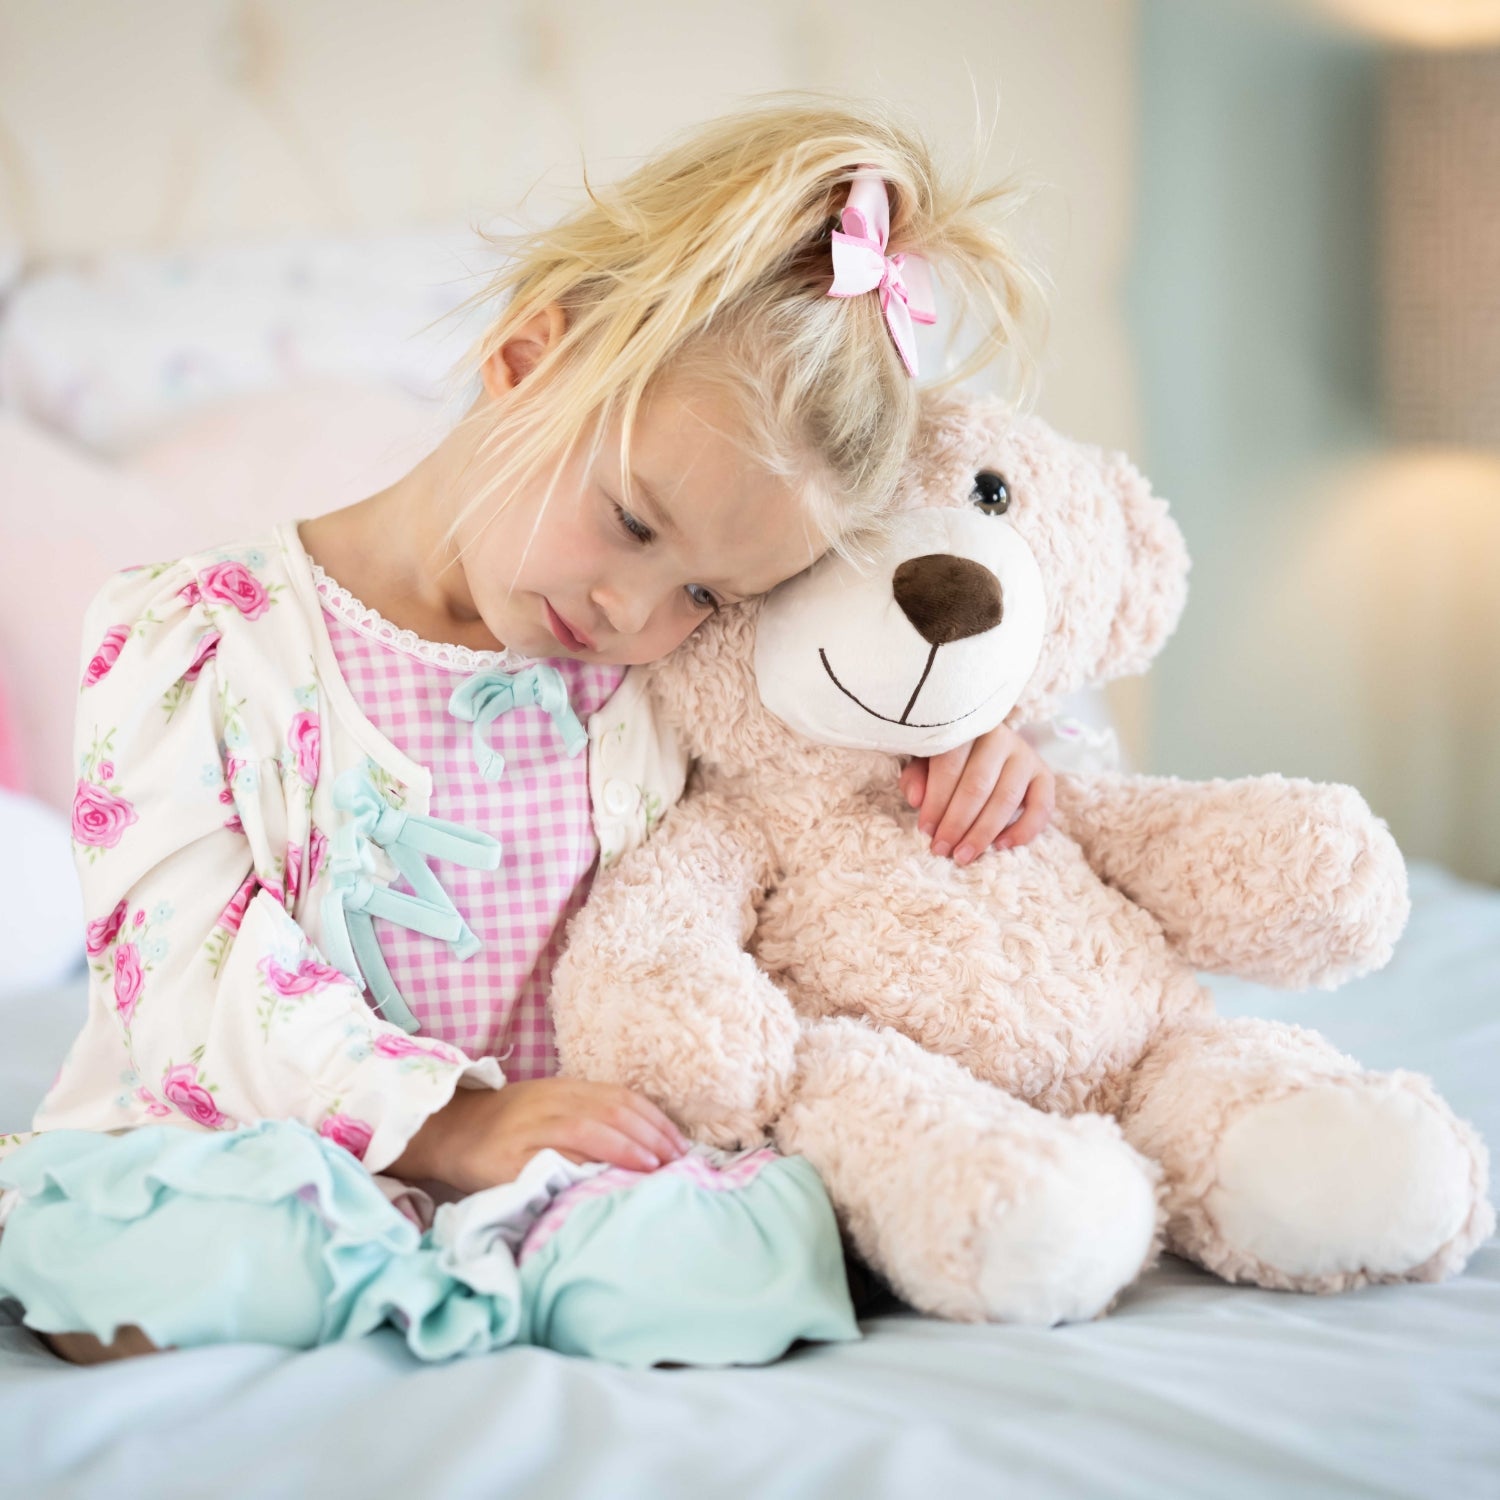 Teddy Bear Stuffed Animal Toy, Beige, 24 Inches